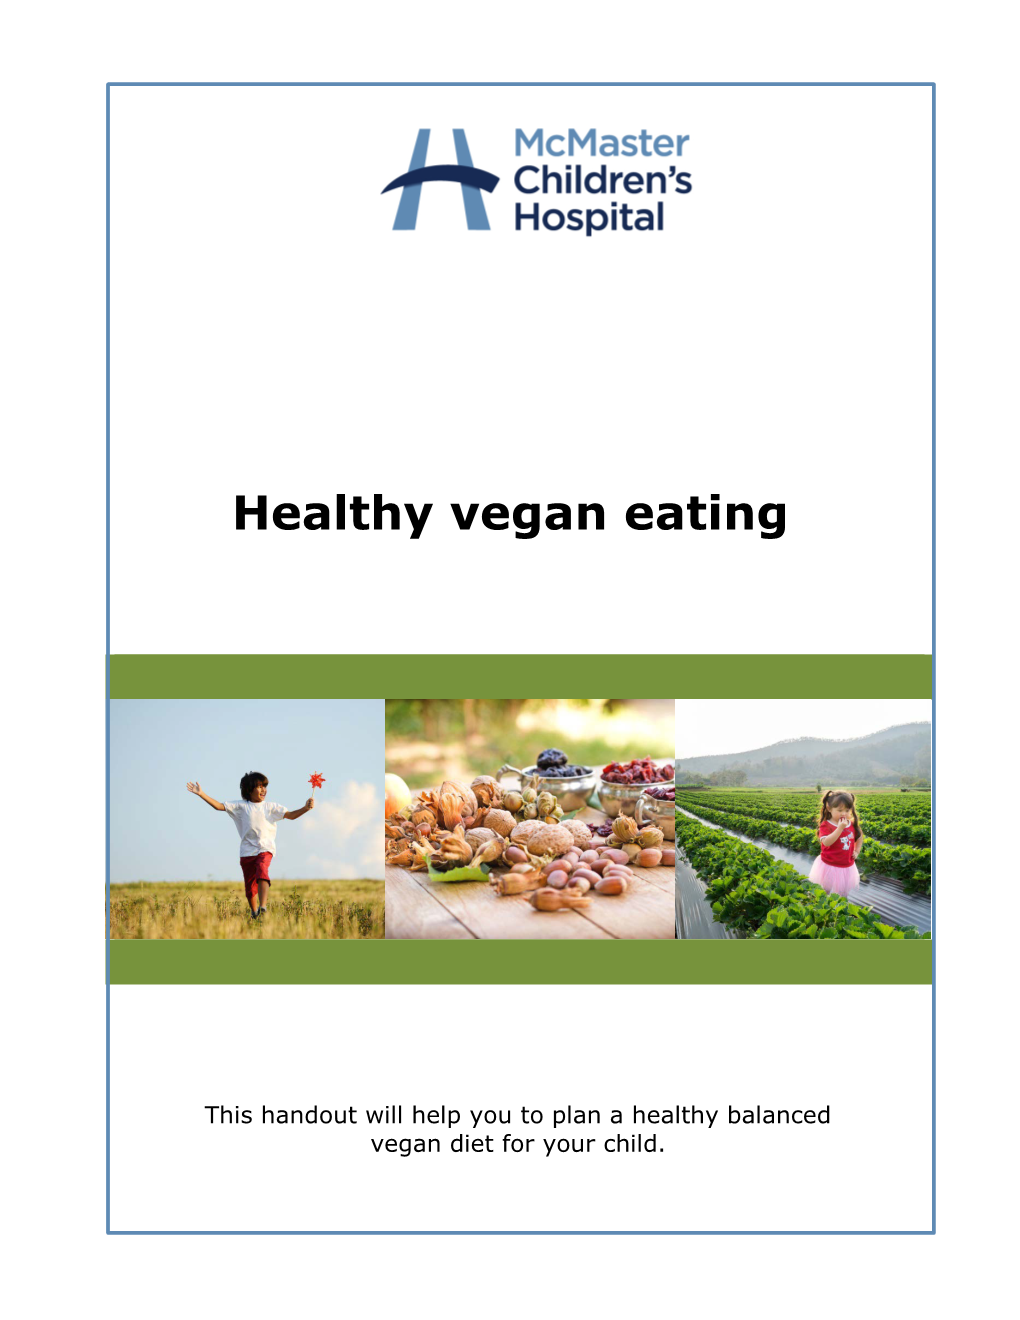 Healthy Vegan Eating (Pediatrics)